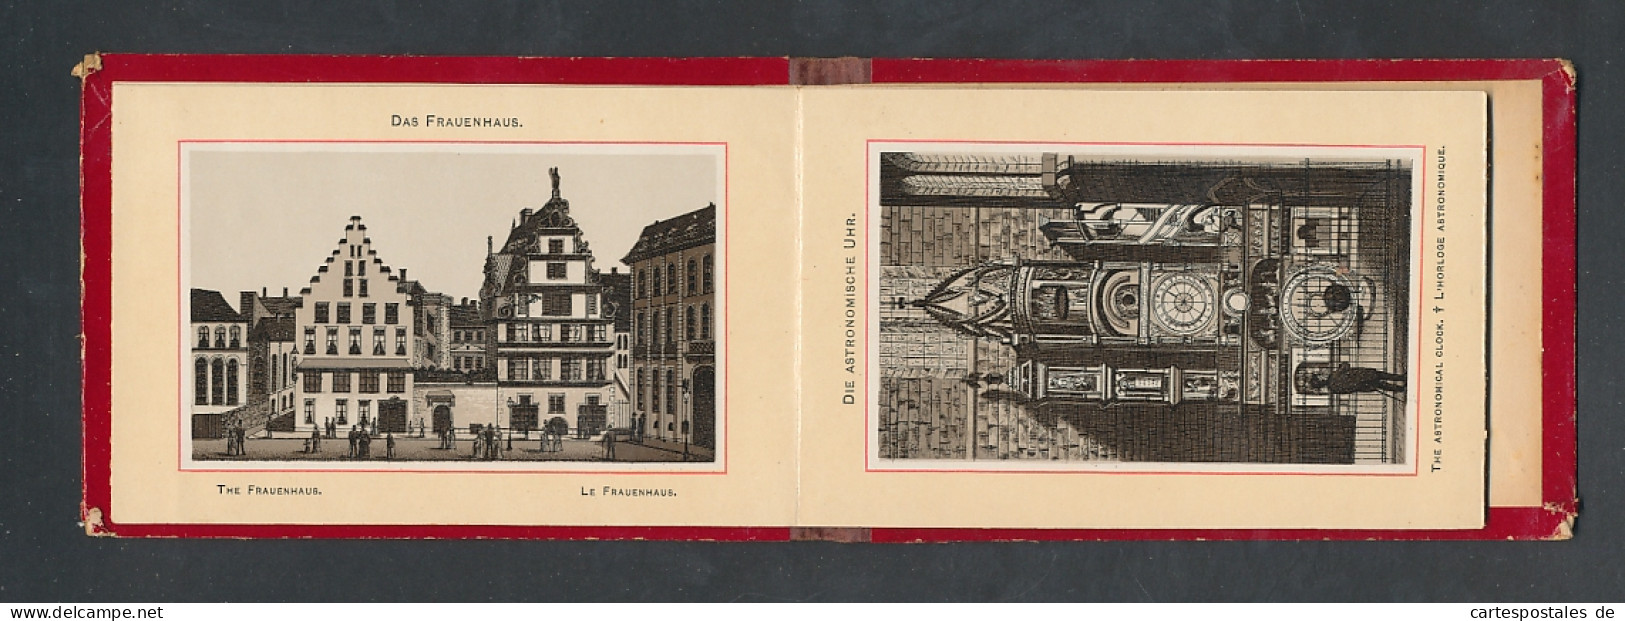 Leporello-Album Strassburg, Lithographien Von Münster, St. Thomas-Kirche, Frauenhaus, Etc.  - Lithografieën